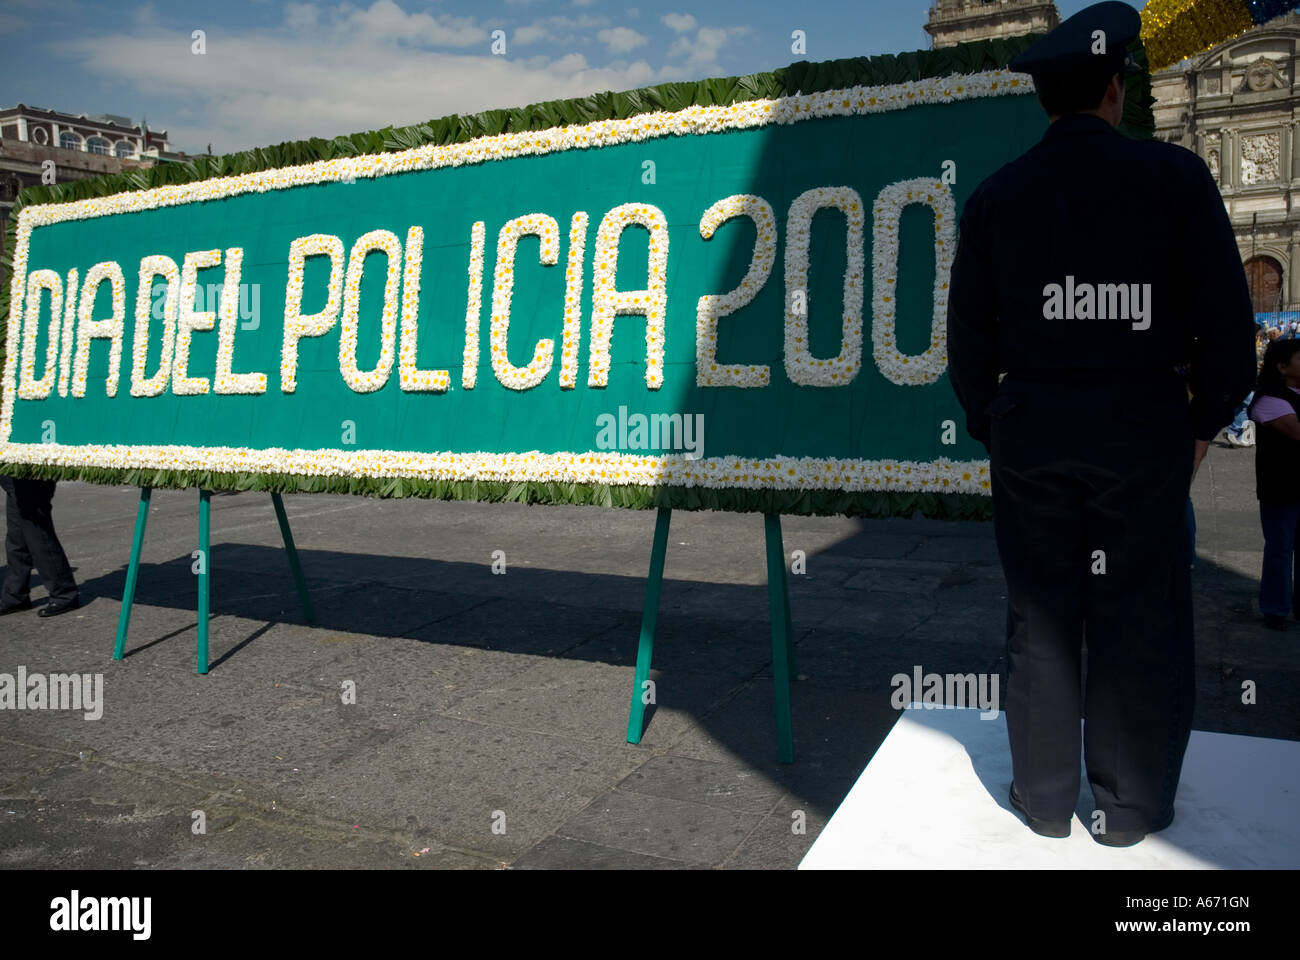 police day in plaza de la constitucion - main mexico city square Stock Photo